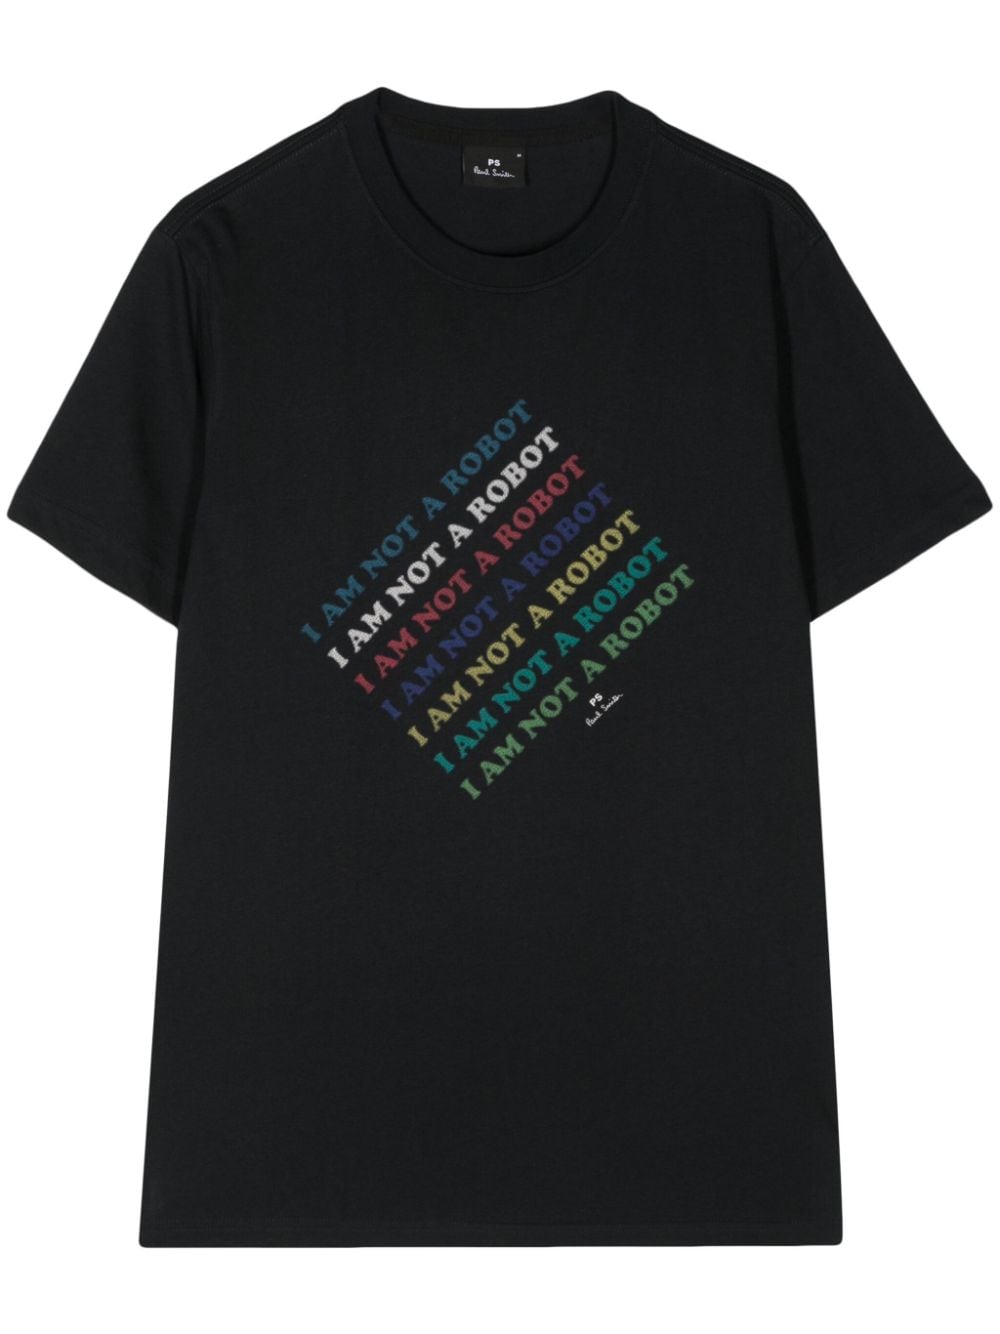 text-print organic cotton T-shirt